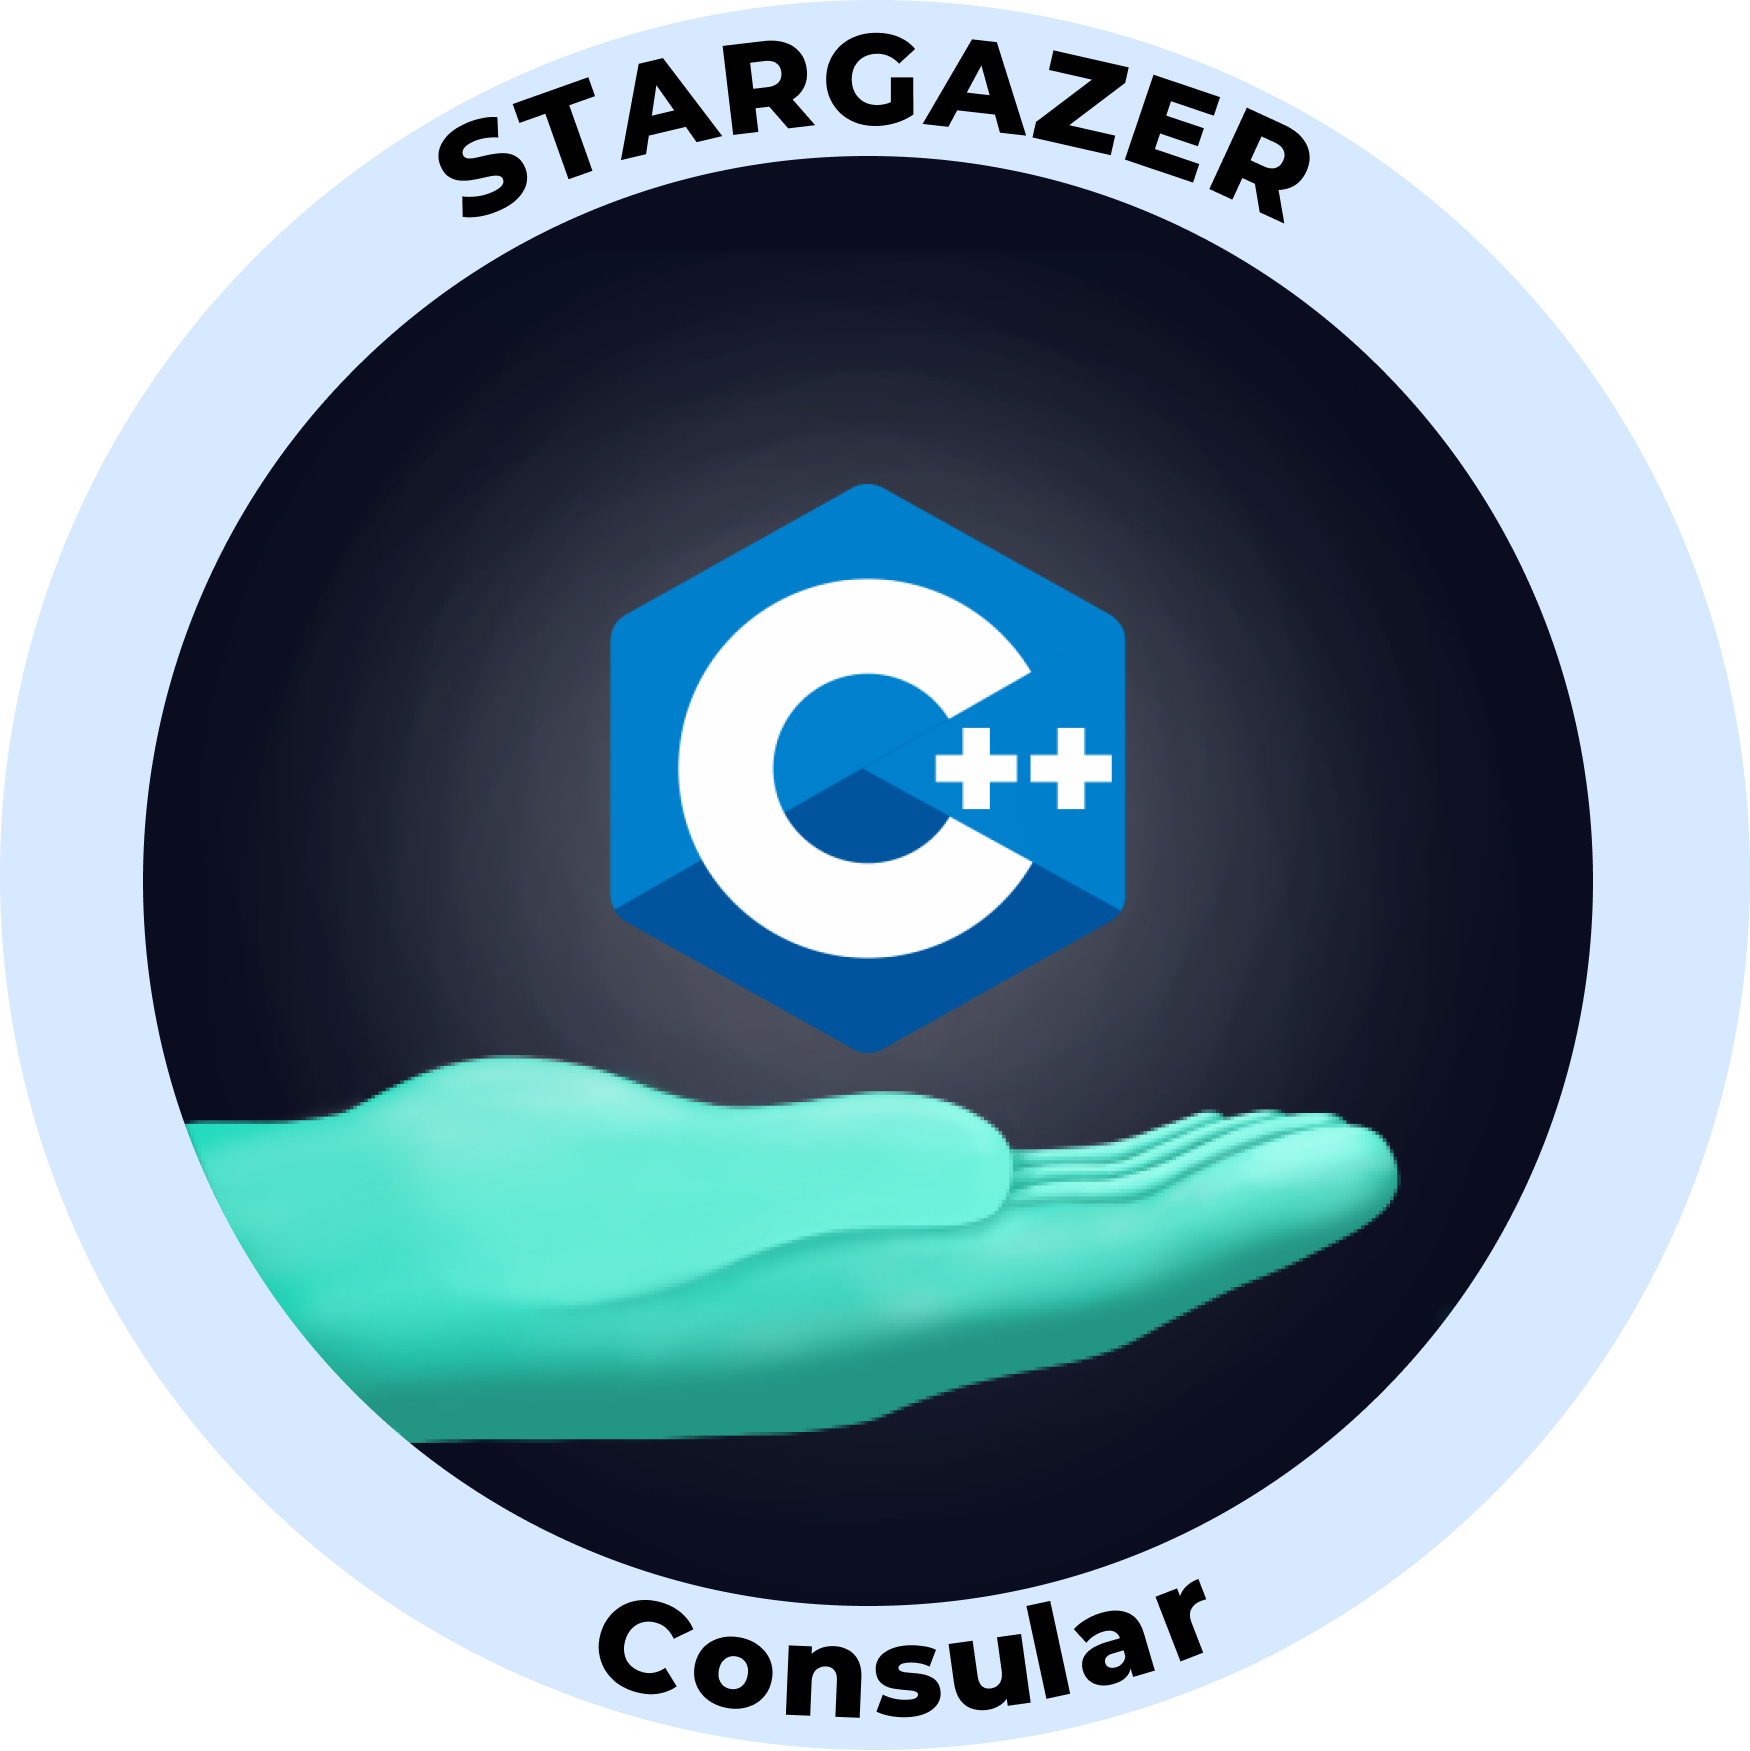 Web3 Badge | Stargazer: C++ Consular